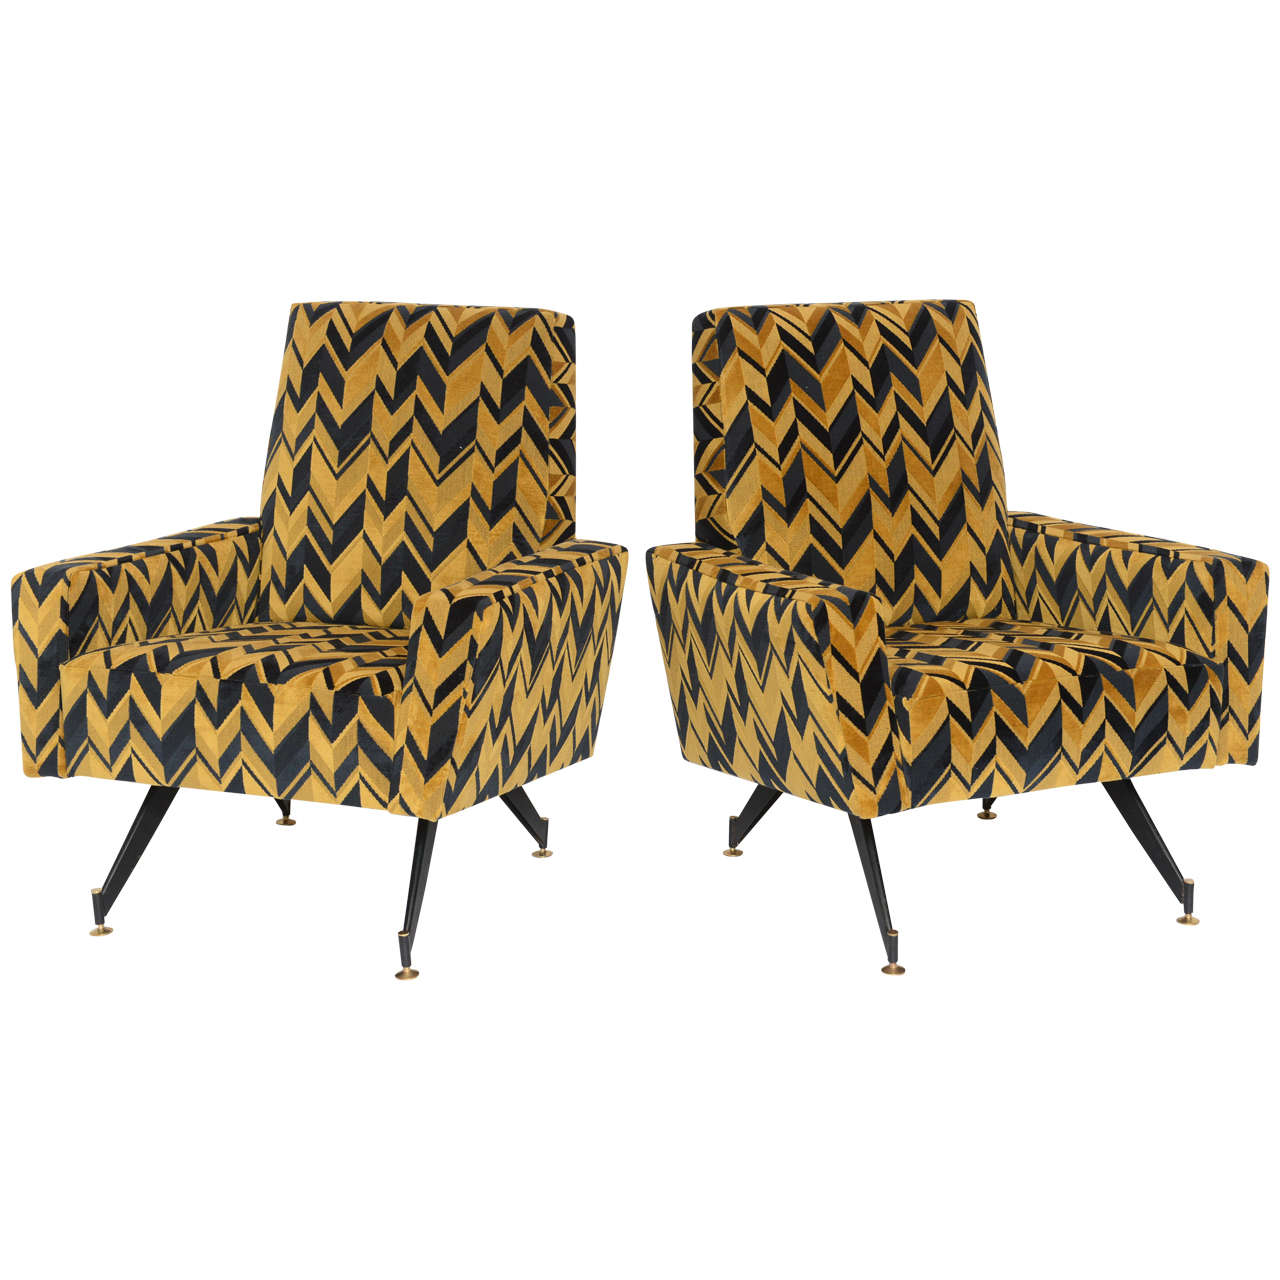 Original Pair of Chic Lounge Chairs by Osvaldo Borsani